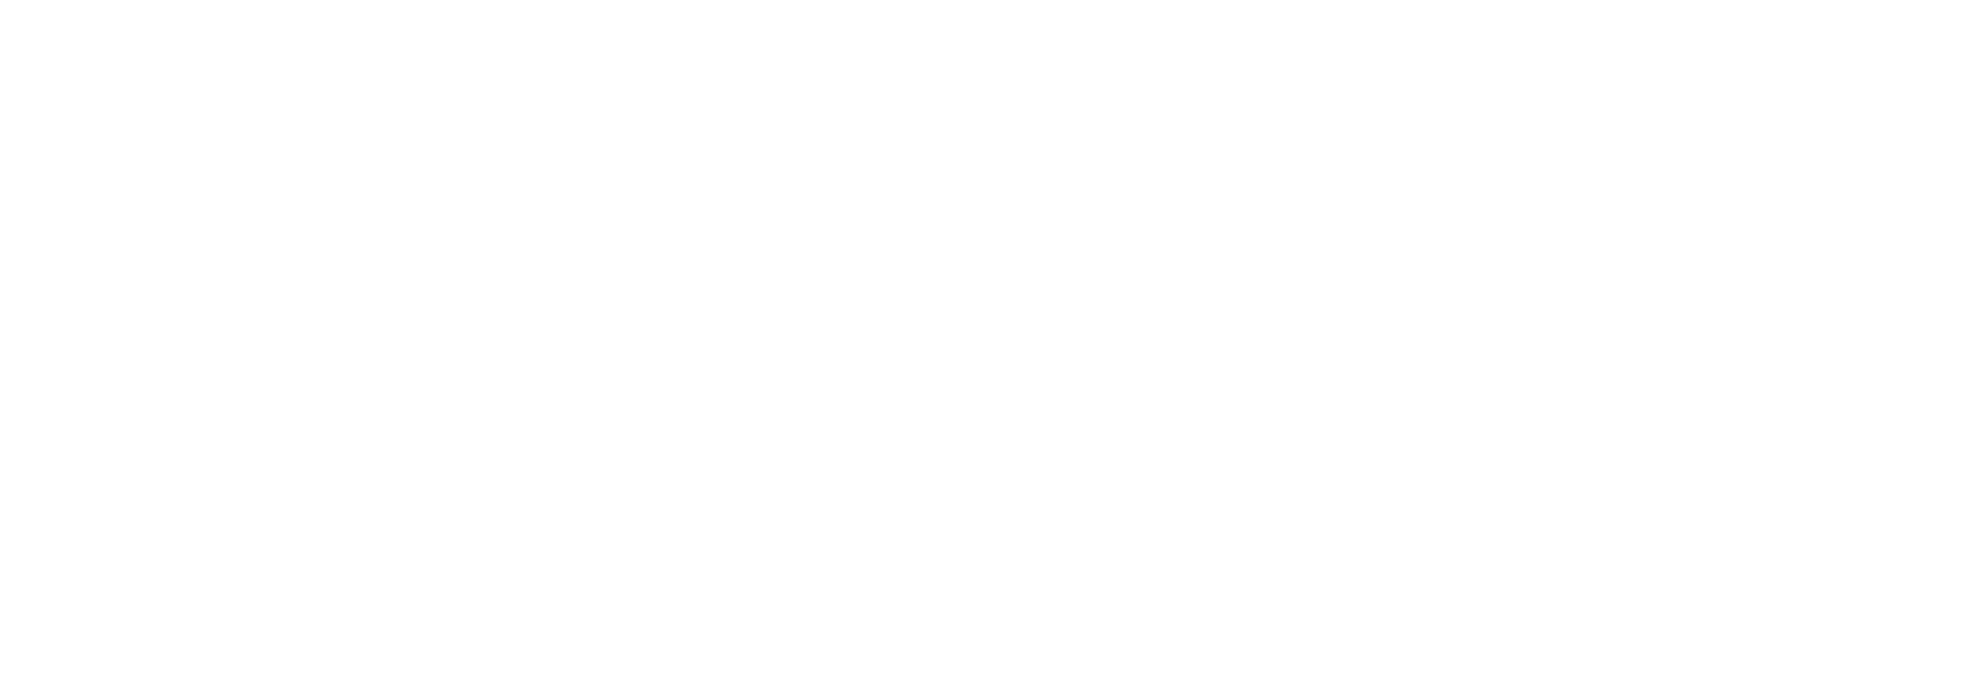 Echelon at 717 Seward - Seward Collective